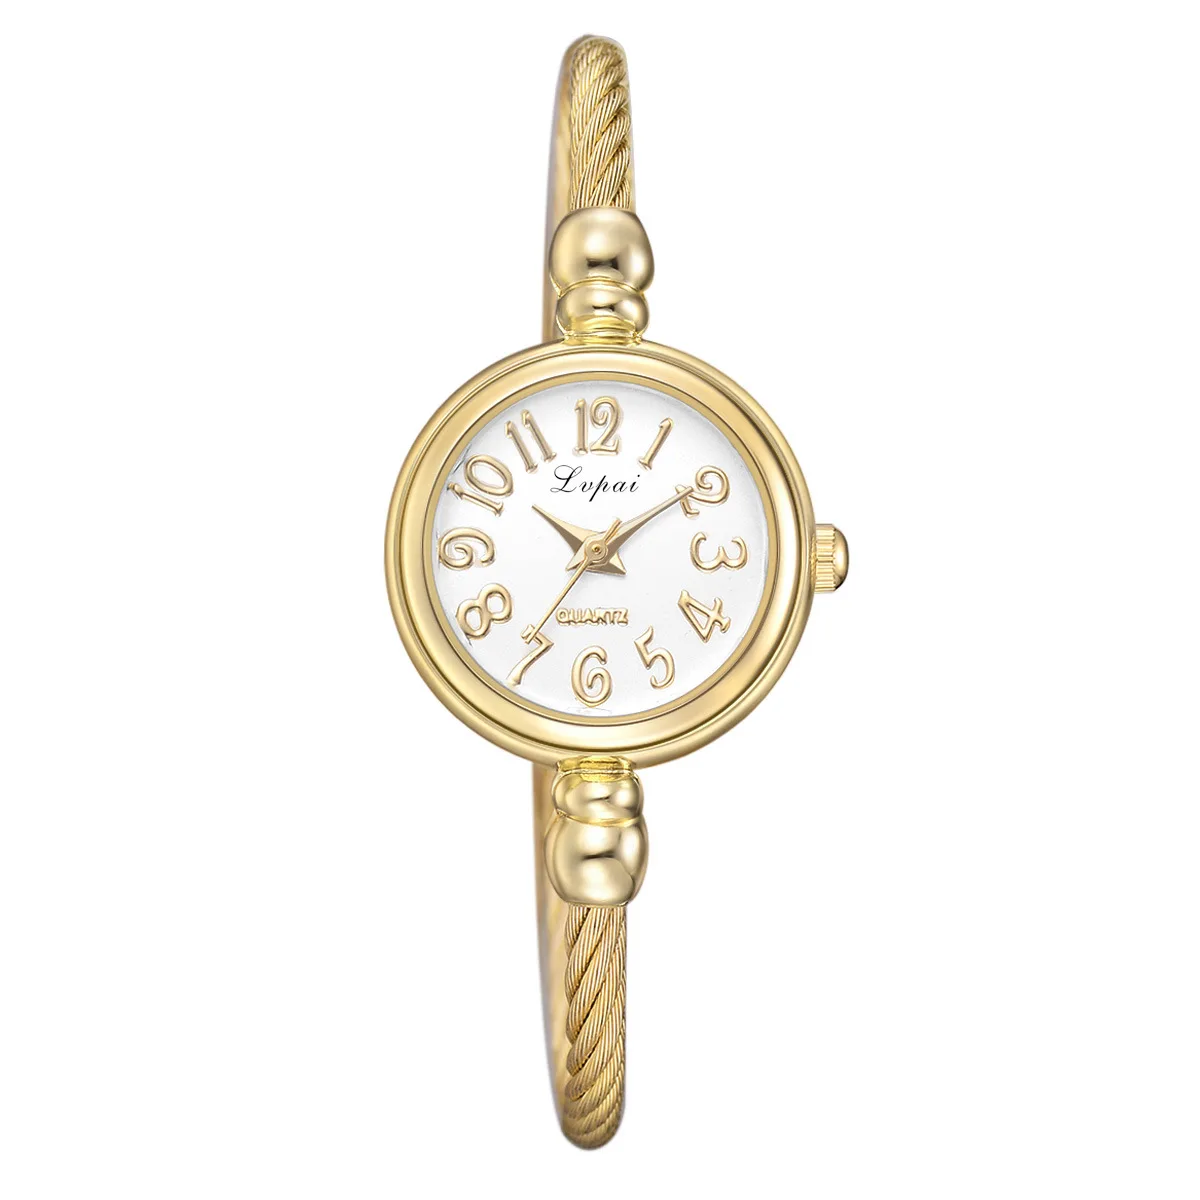 Marca De Luxo Mulheres Relógios De Moda Cinta De Aço Inoxidável De Quartzo Do Relógio De Pulso De Ouro Senhoras Vestido De Observar Os Homens Relógios Relógio De Presente